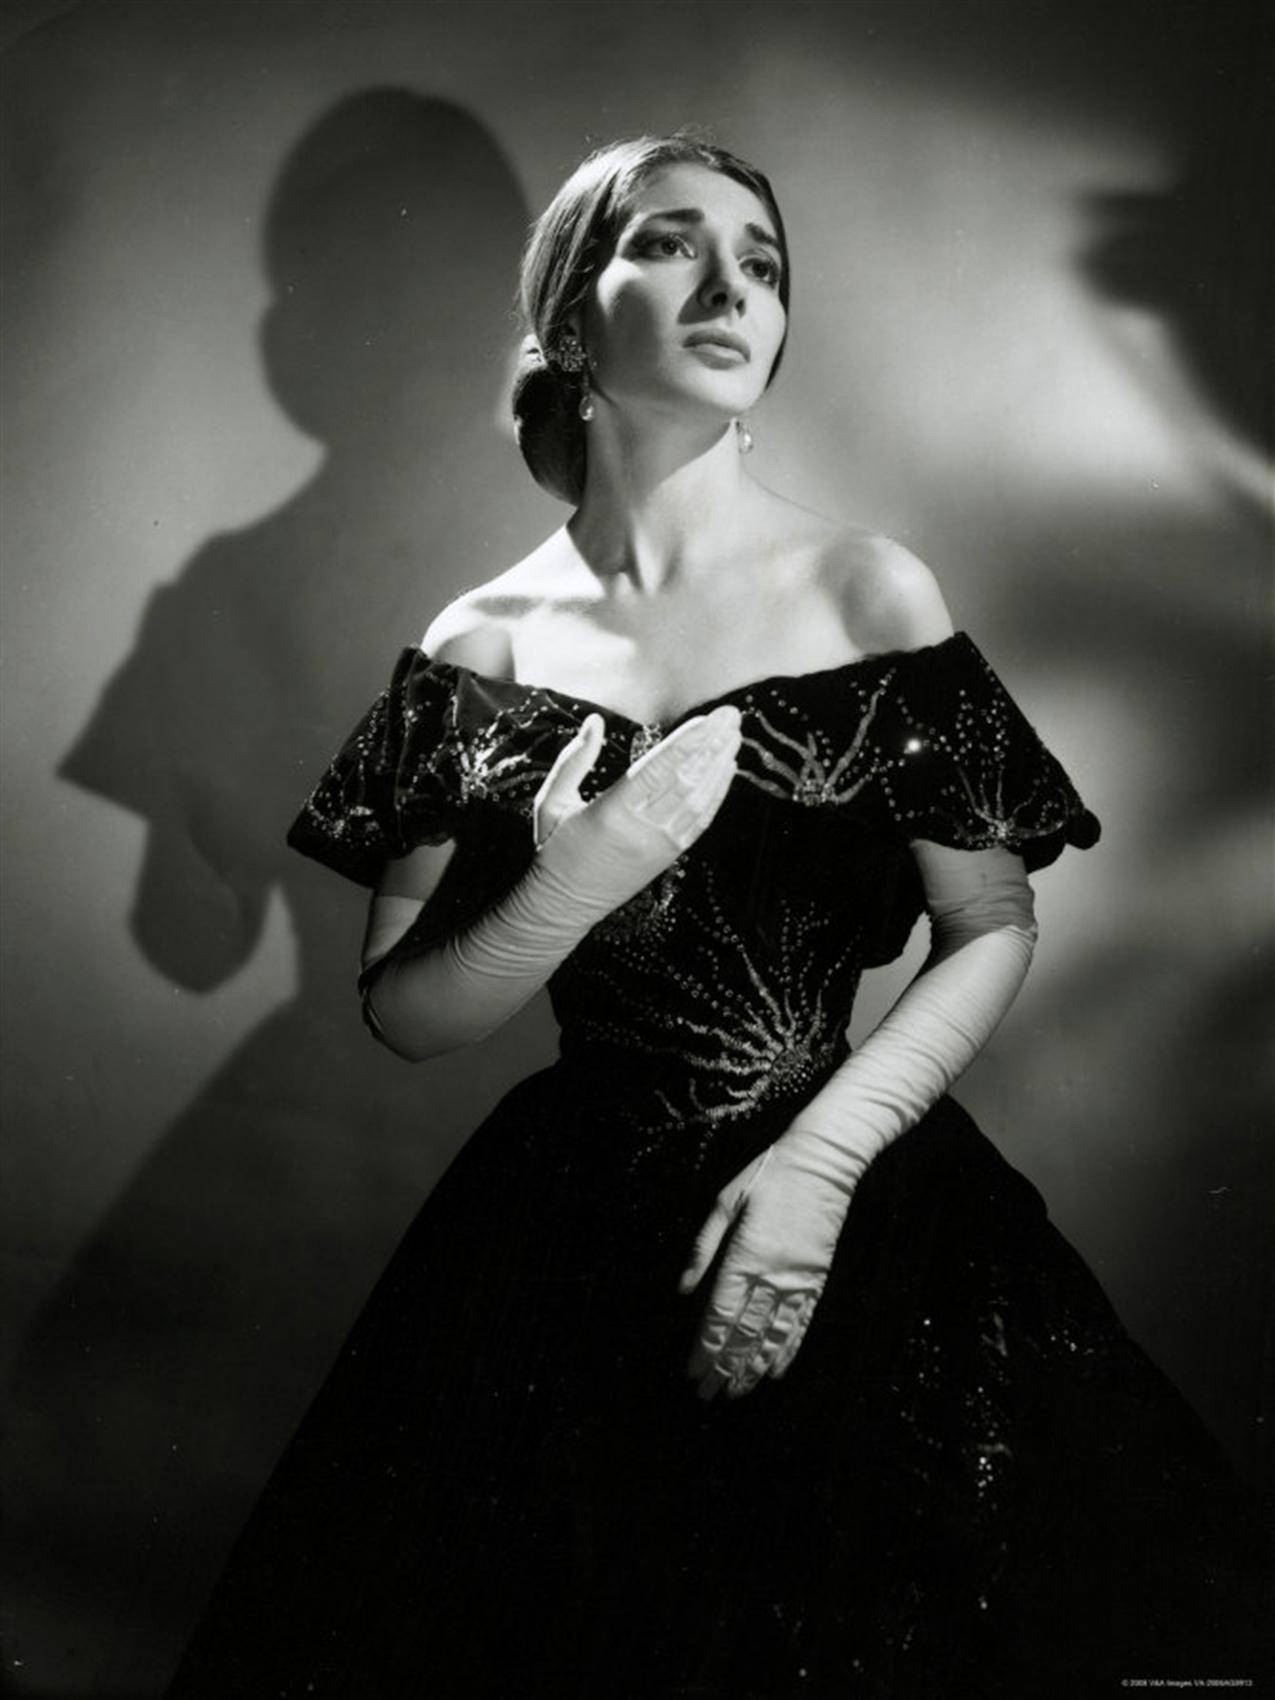 Si hay una cantante que se haya identificado plenamente con "La Traviata" esa es María Callas, alguien que supo muy bien lo que es sufrir por amor